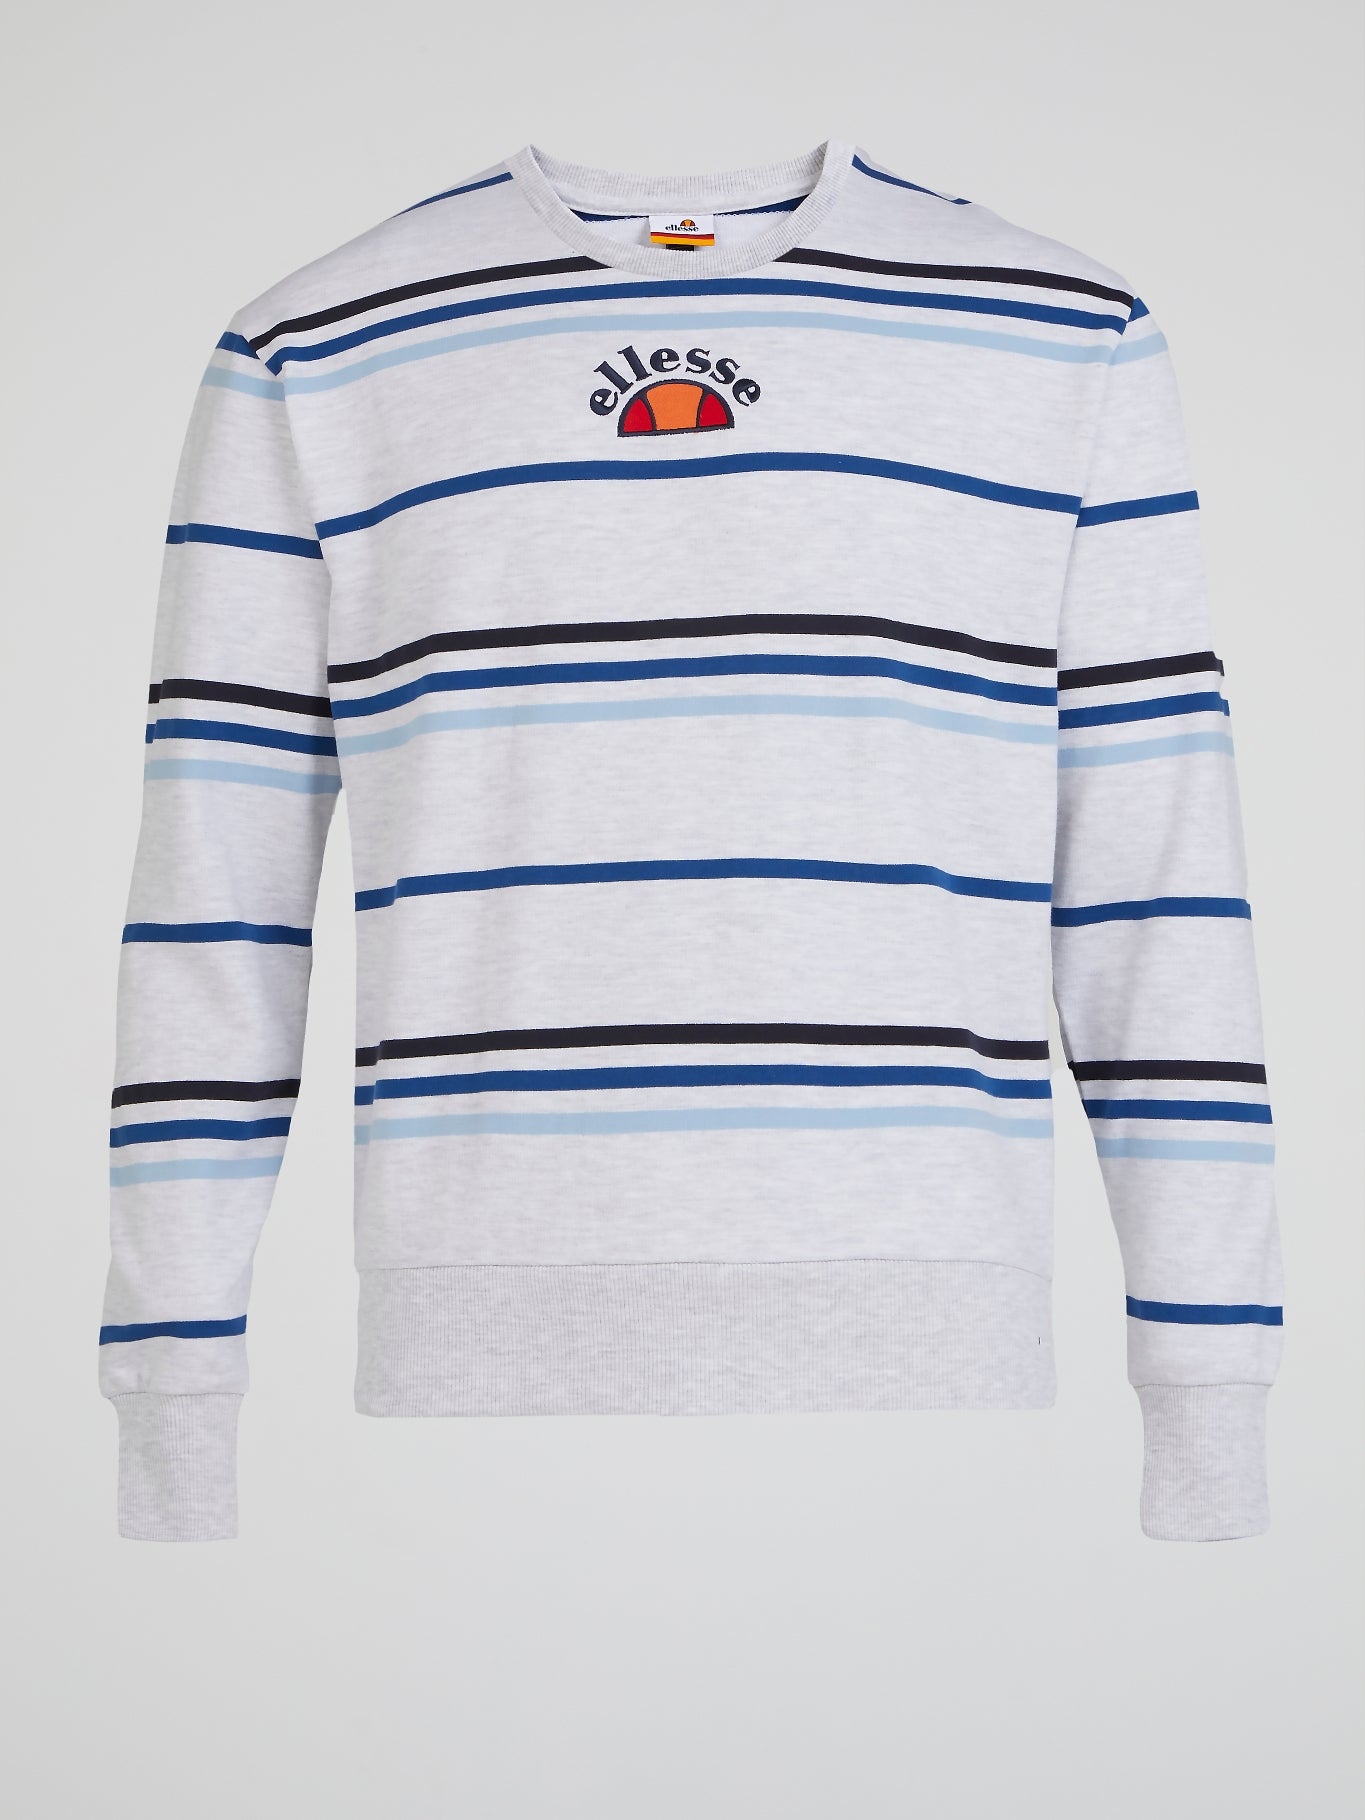 Pirozzo White Striped Sweatshirt